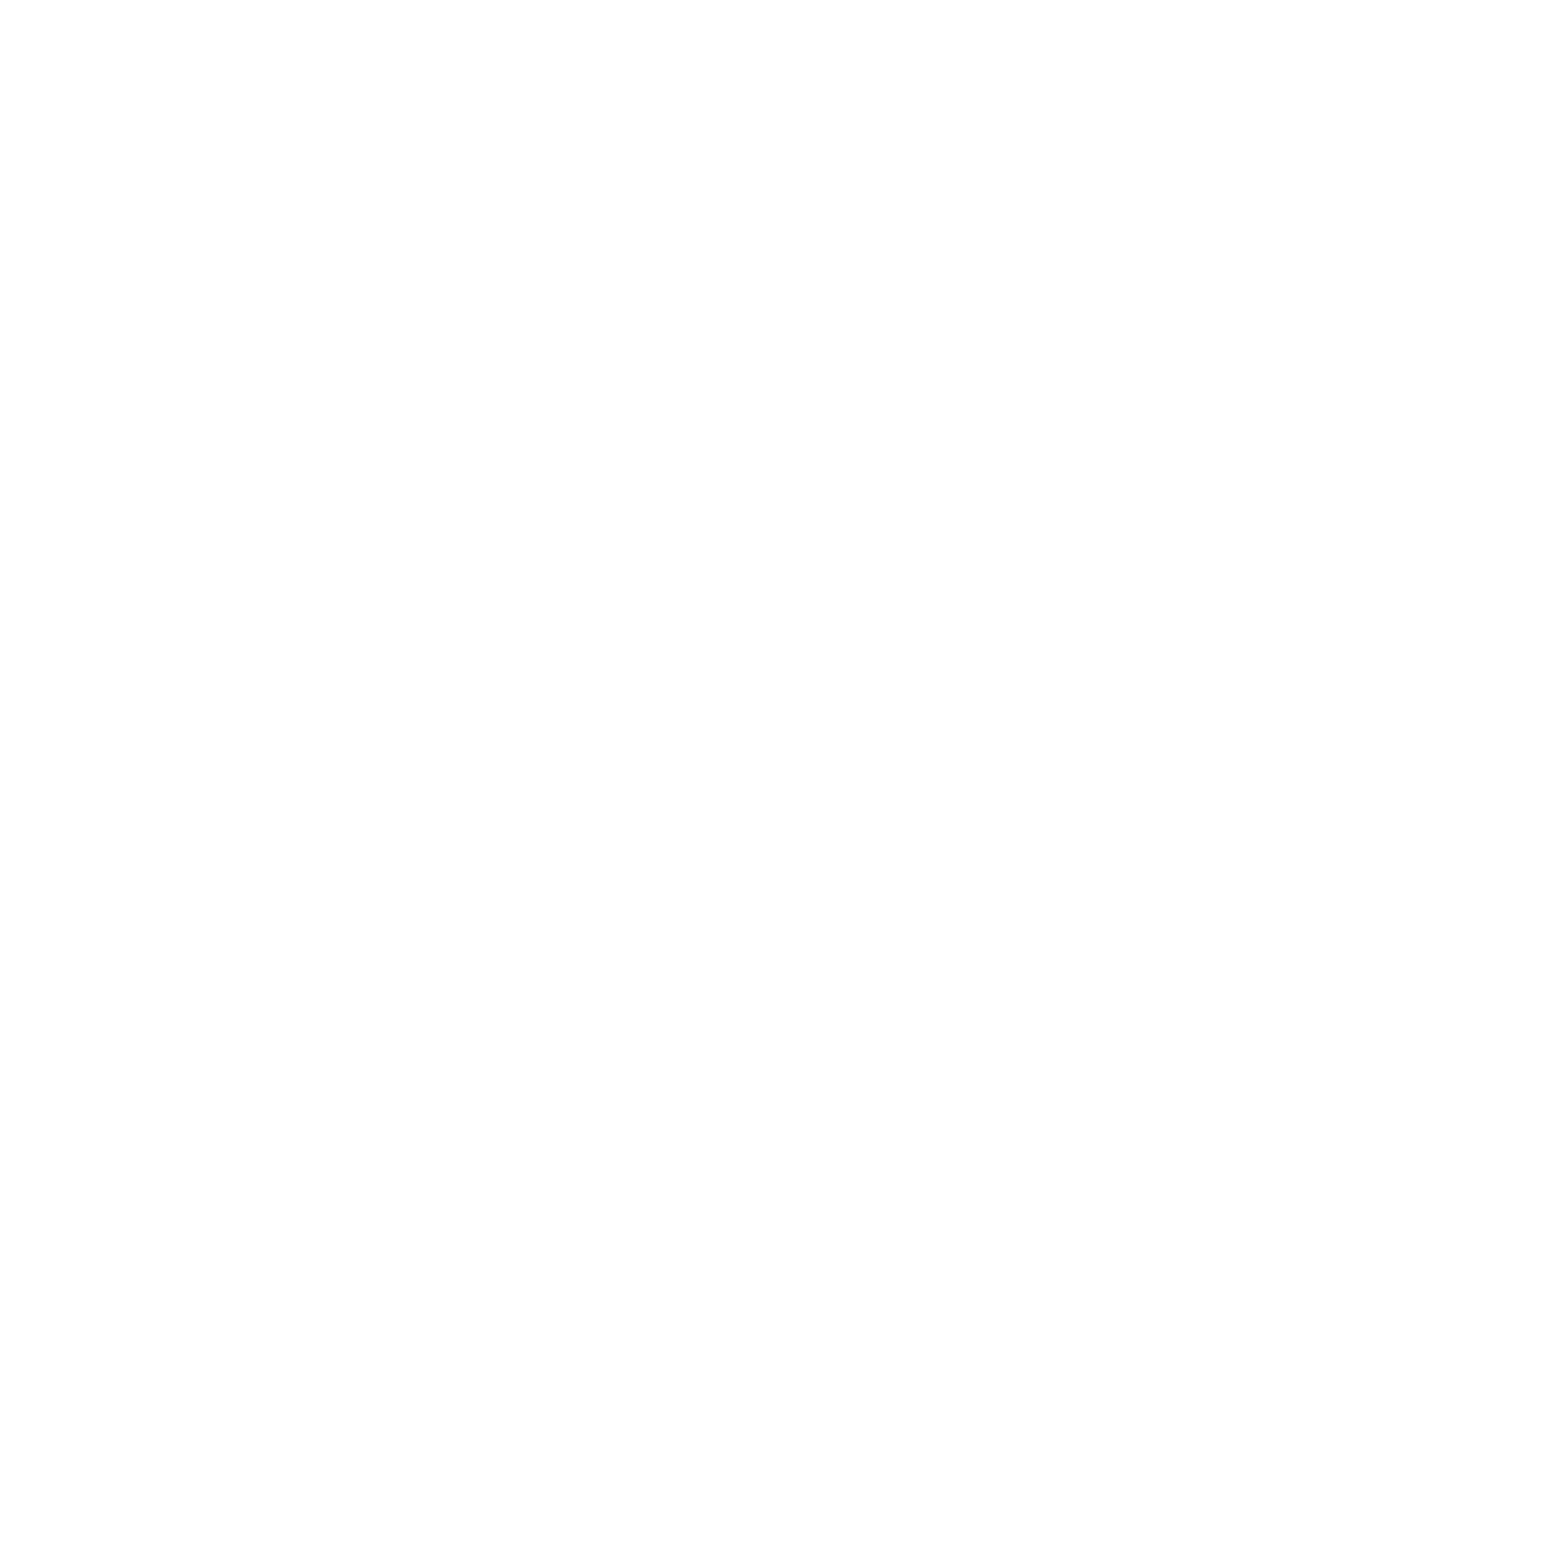 IOI Corporation Berhad logo pour fonds sombres (PNG transparent)